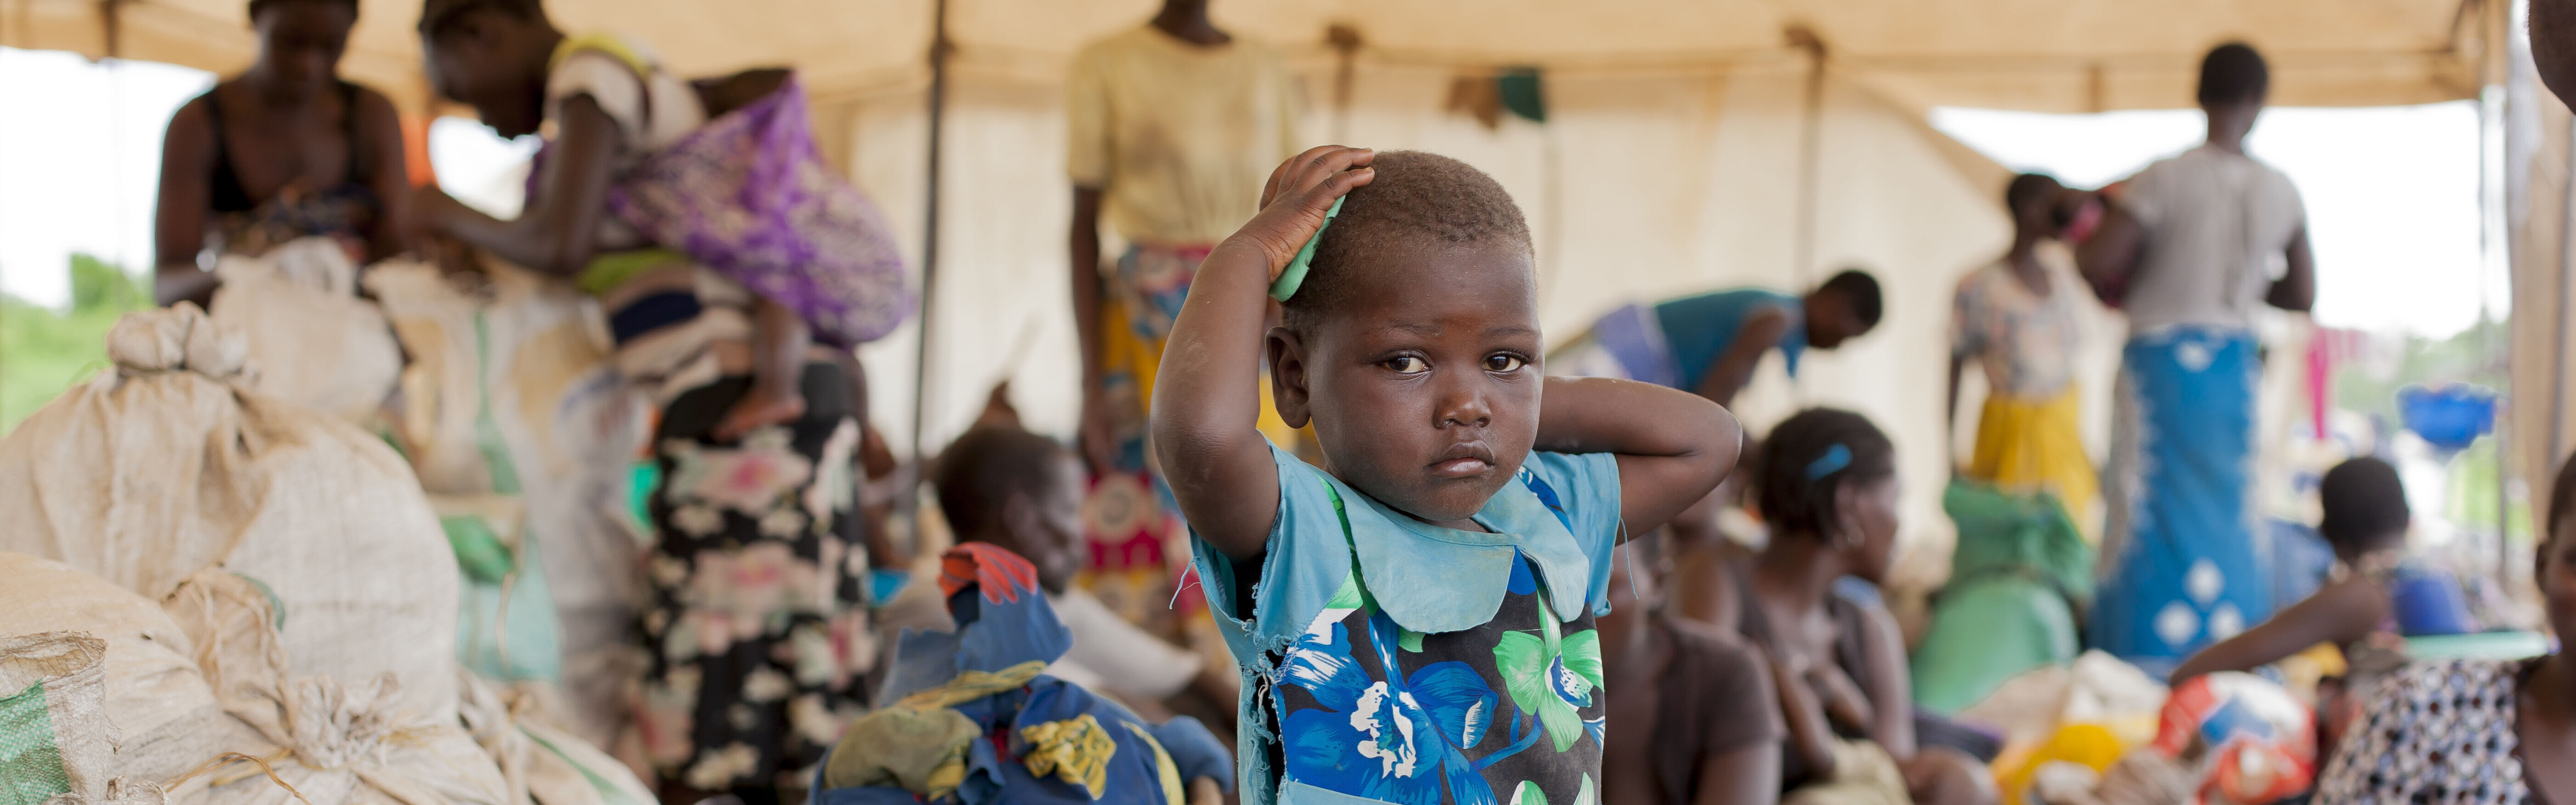 Hilfe nach der Naturkatastrophe: Hilfsgüter für Kinder, Frauen und Männer in Malawi